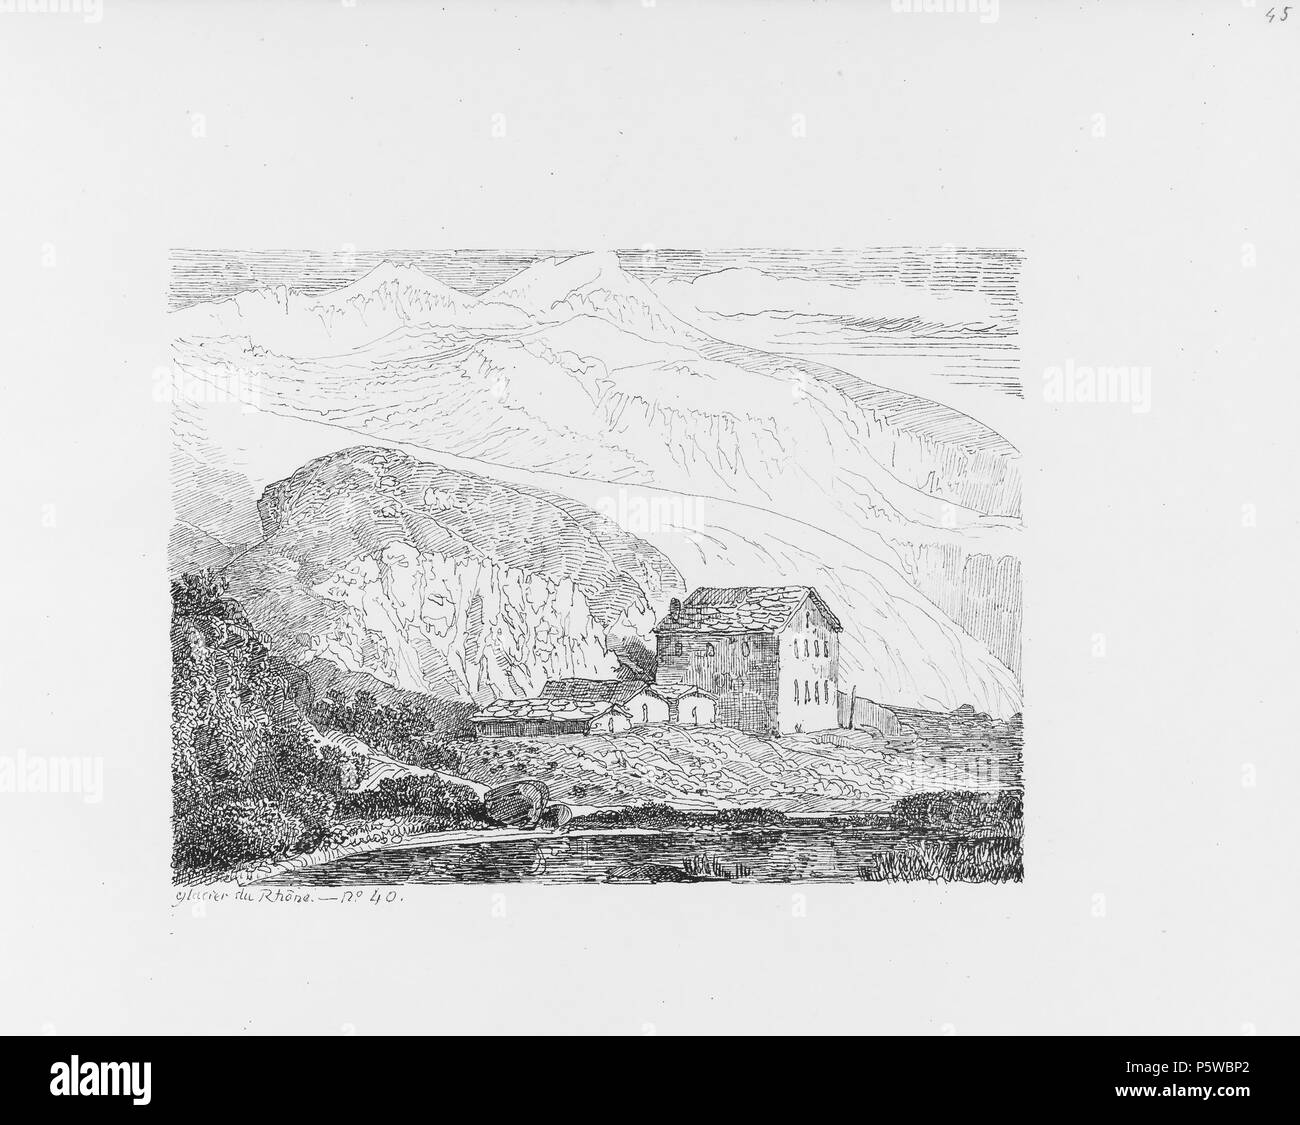 322 CH-NB-Voyage autour du Mont-Blanc dans les vallées d'Hérens de Zermatt et au Grimsel 1843-nbdig-19161-046 Stock Photo